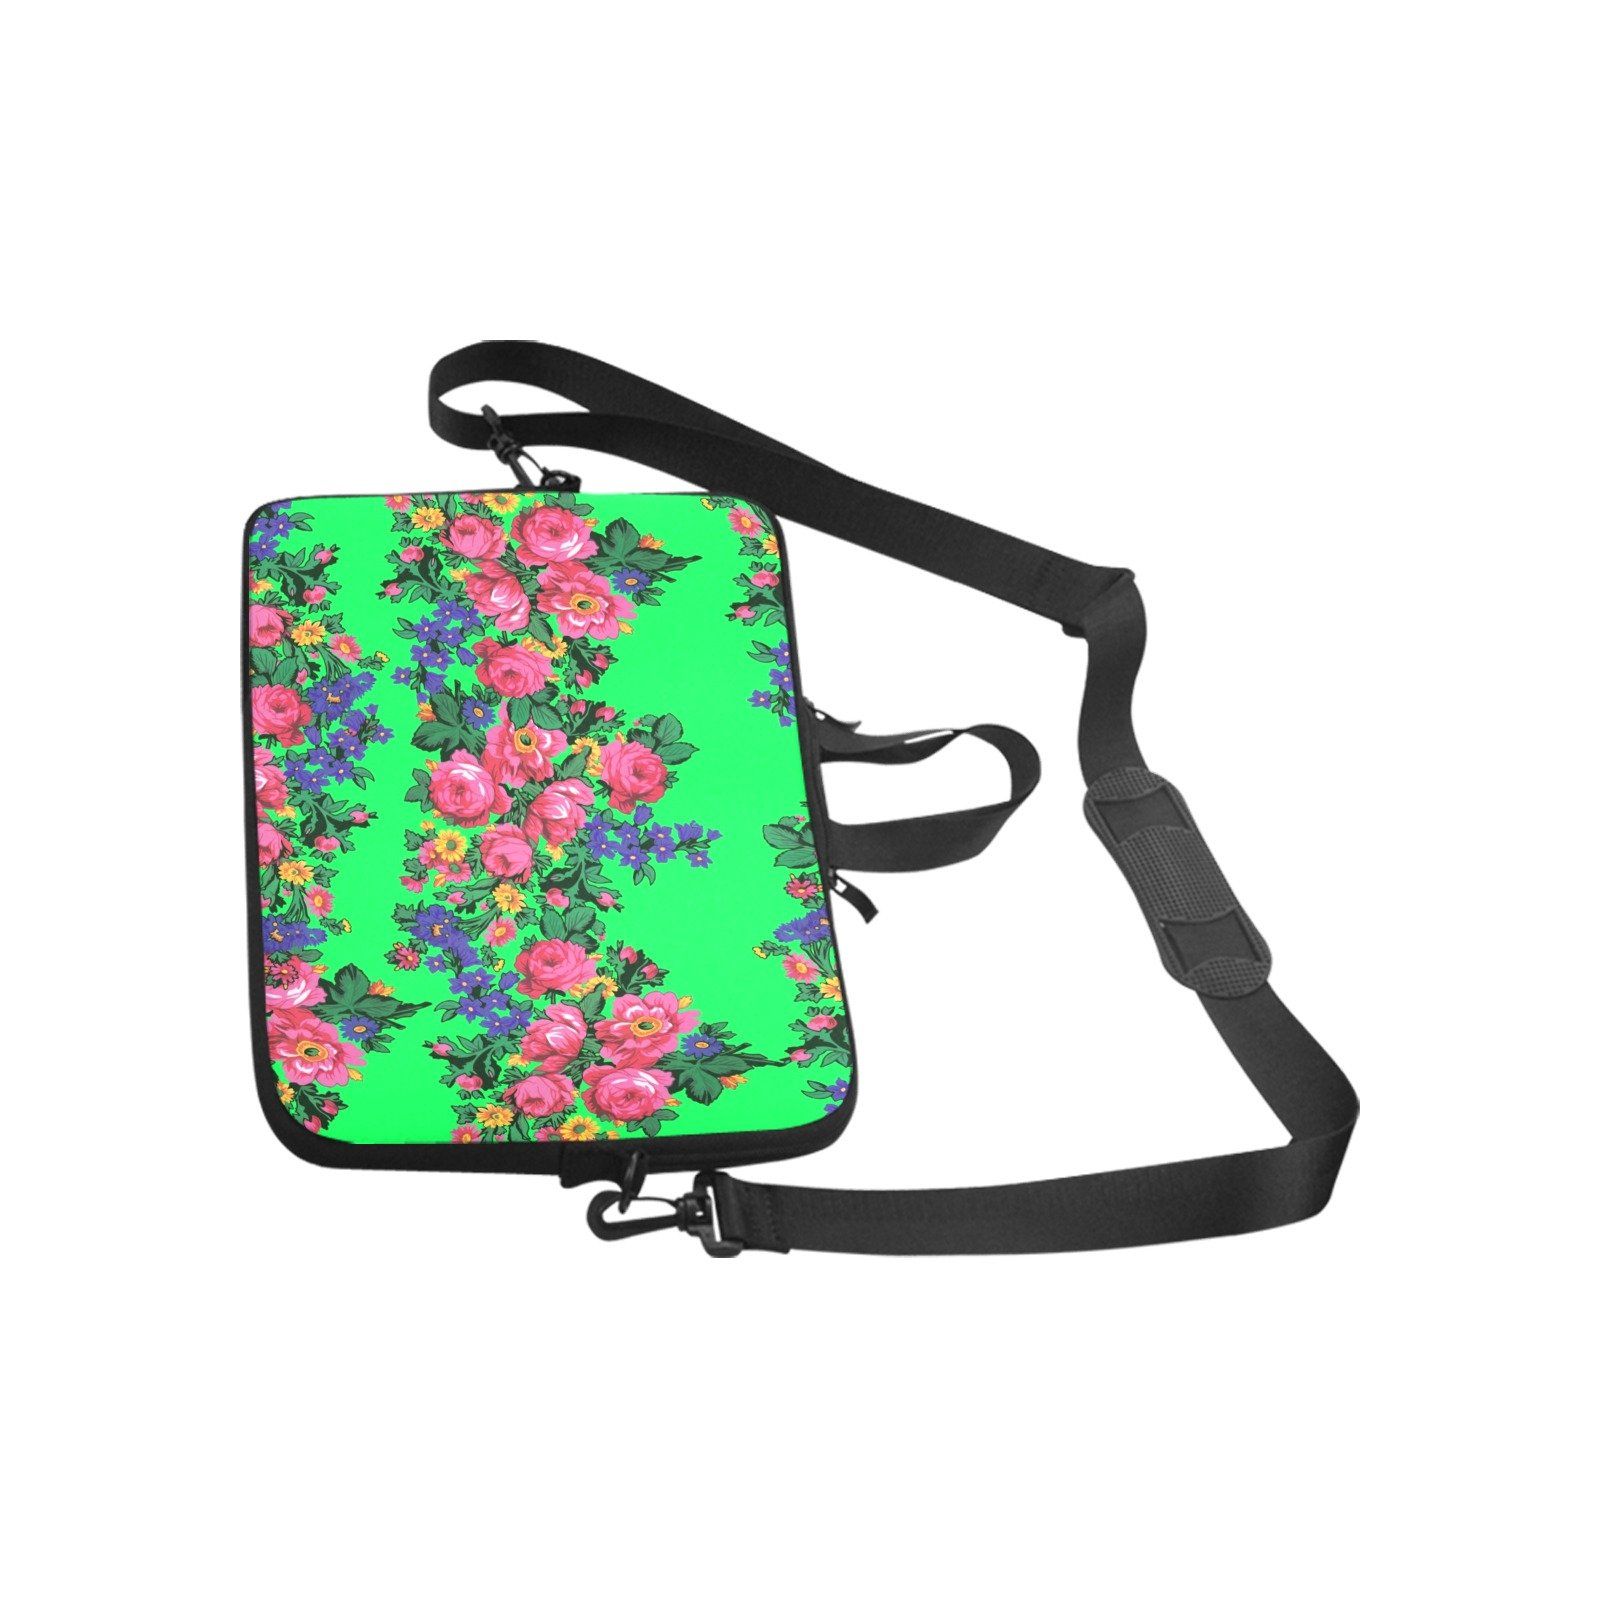 Kokum's Revenge Green Laptop Handbags 14" bag e-joyer 